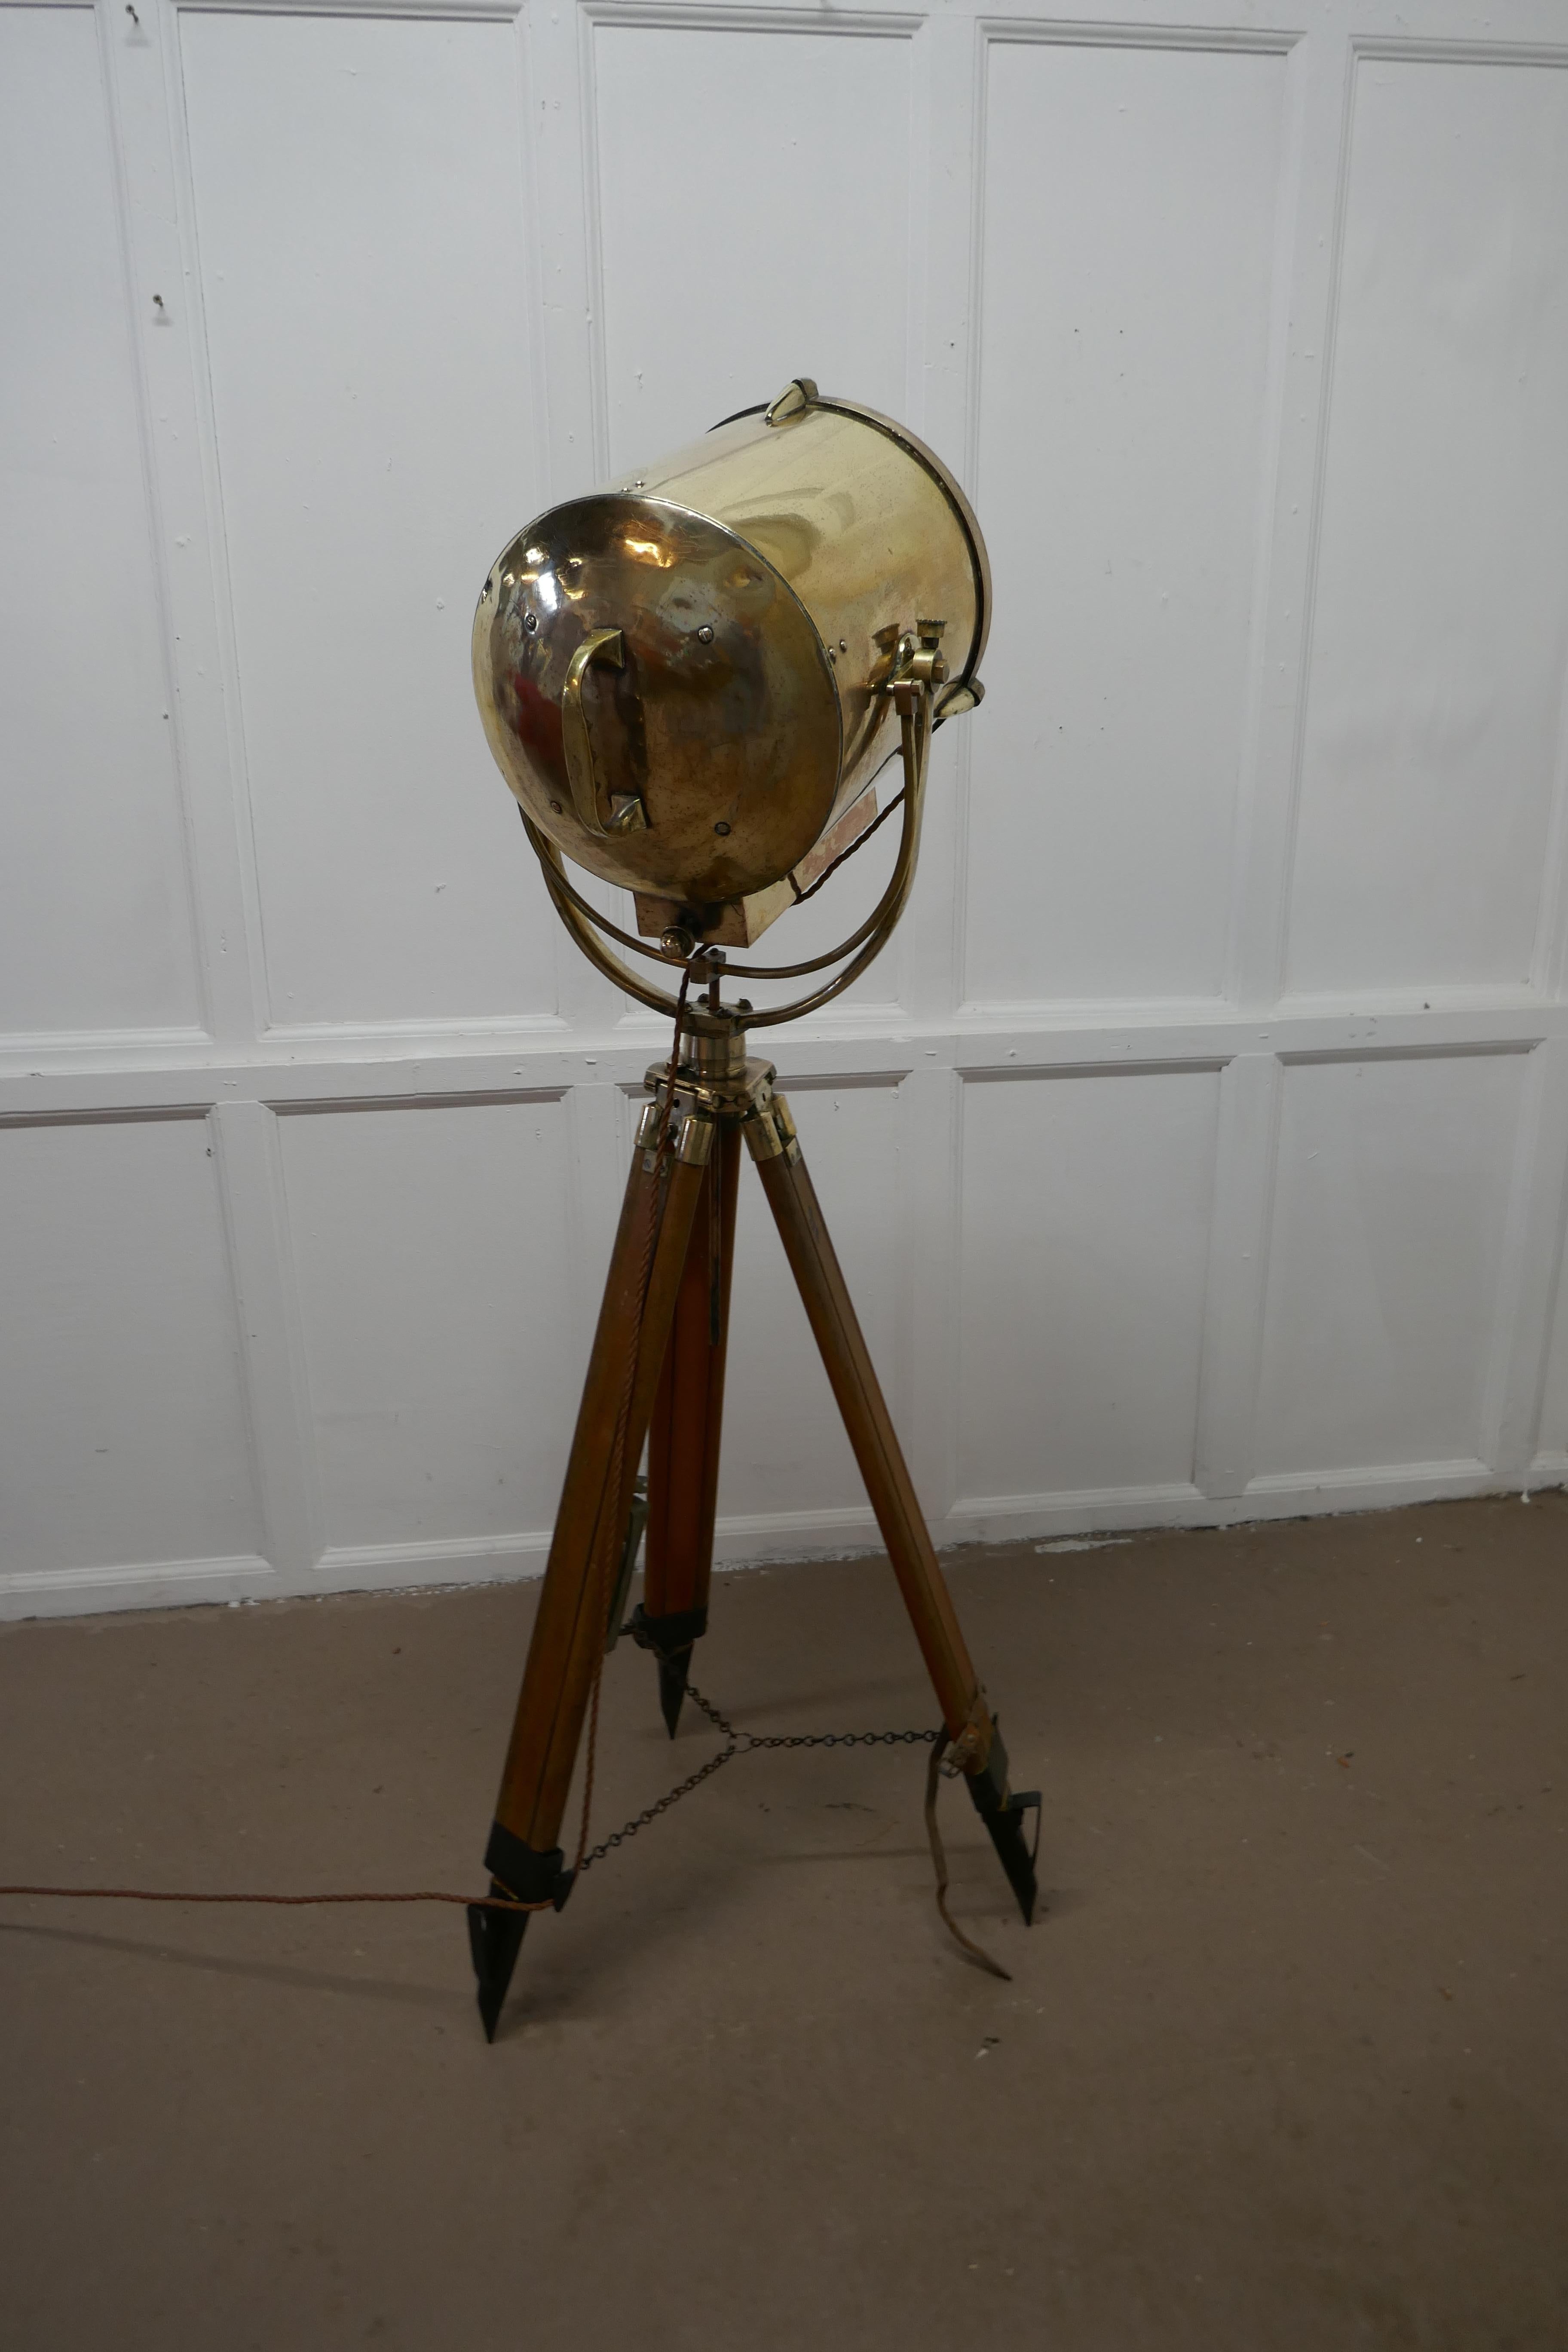 Très grande lampe de recherche ou spot nautique vintage du 19ème siècle par G Vieira

La lampe est en laiton, elle est très grande et posée sur un trépied en bois et laiton, elle est entièrement inclinable et pivotante, elle a une plaque de